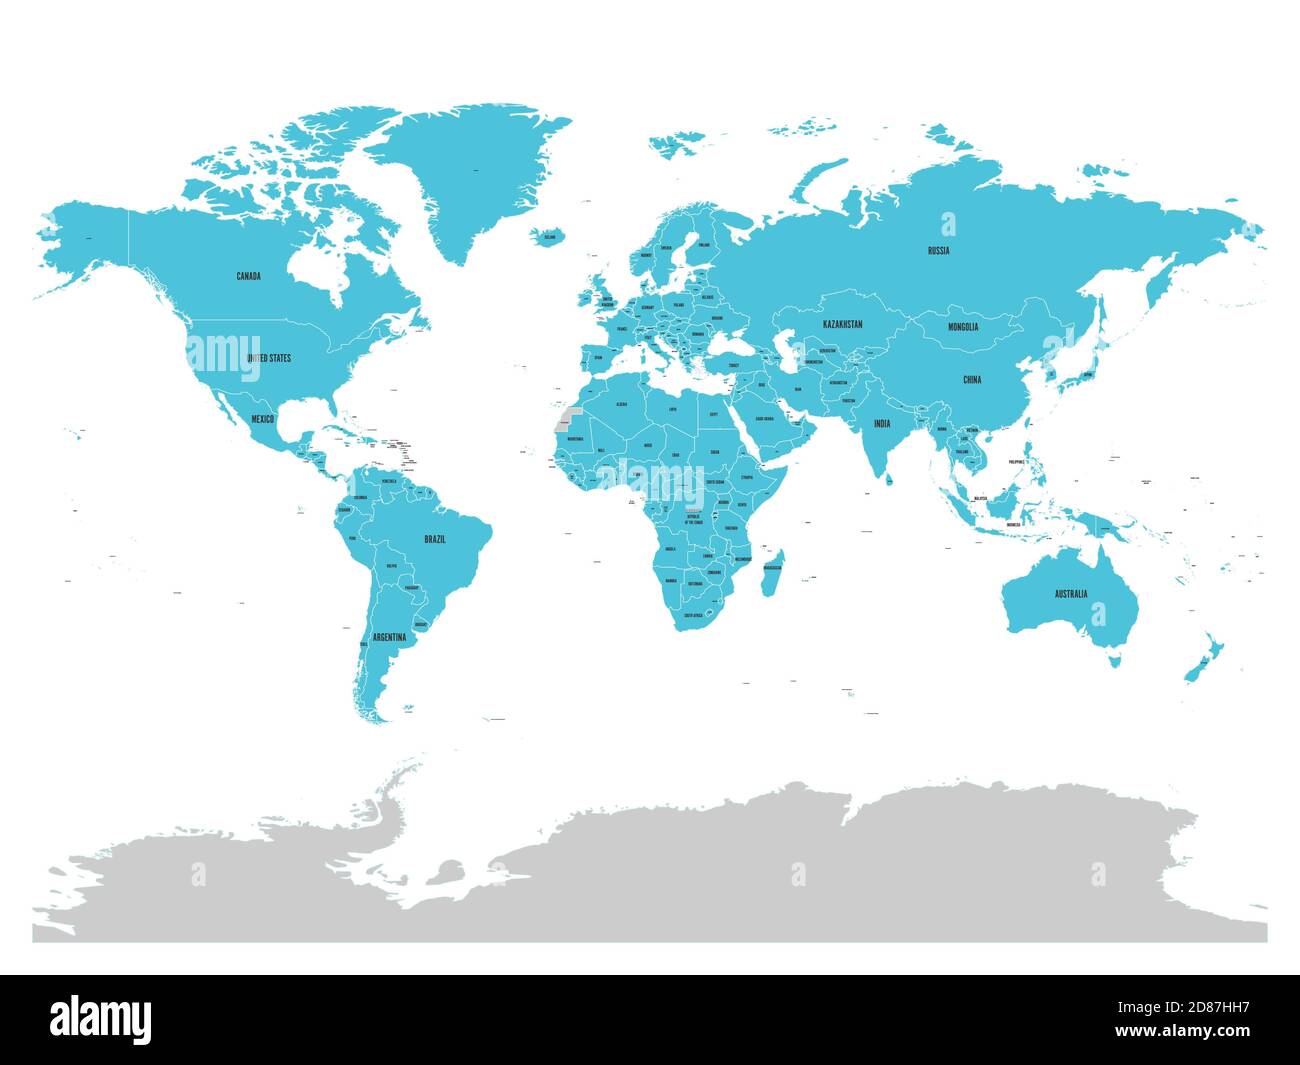 Carte des Nations Unies avec États membres surlignés en bleu. L'ONU est une  organisation intergouvernementale de coopération internationale.  Illustration du vecteur EPS10 Image Vectorielle Stock - Alamy